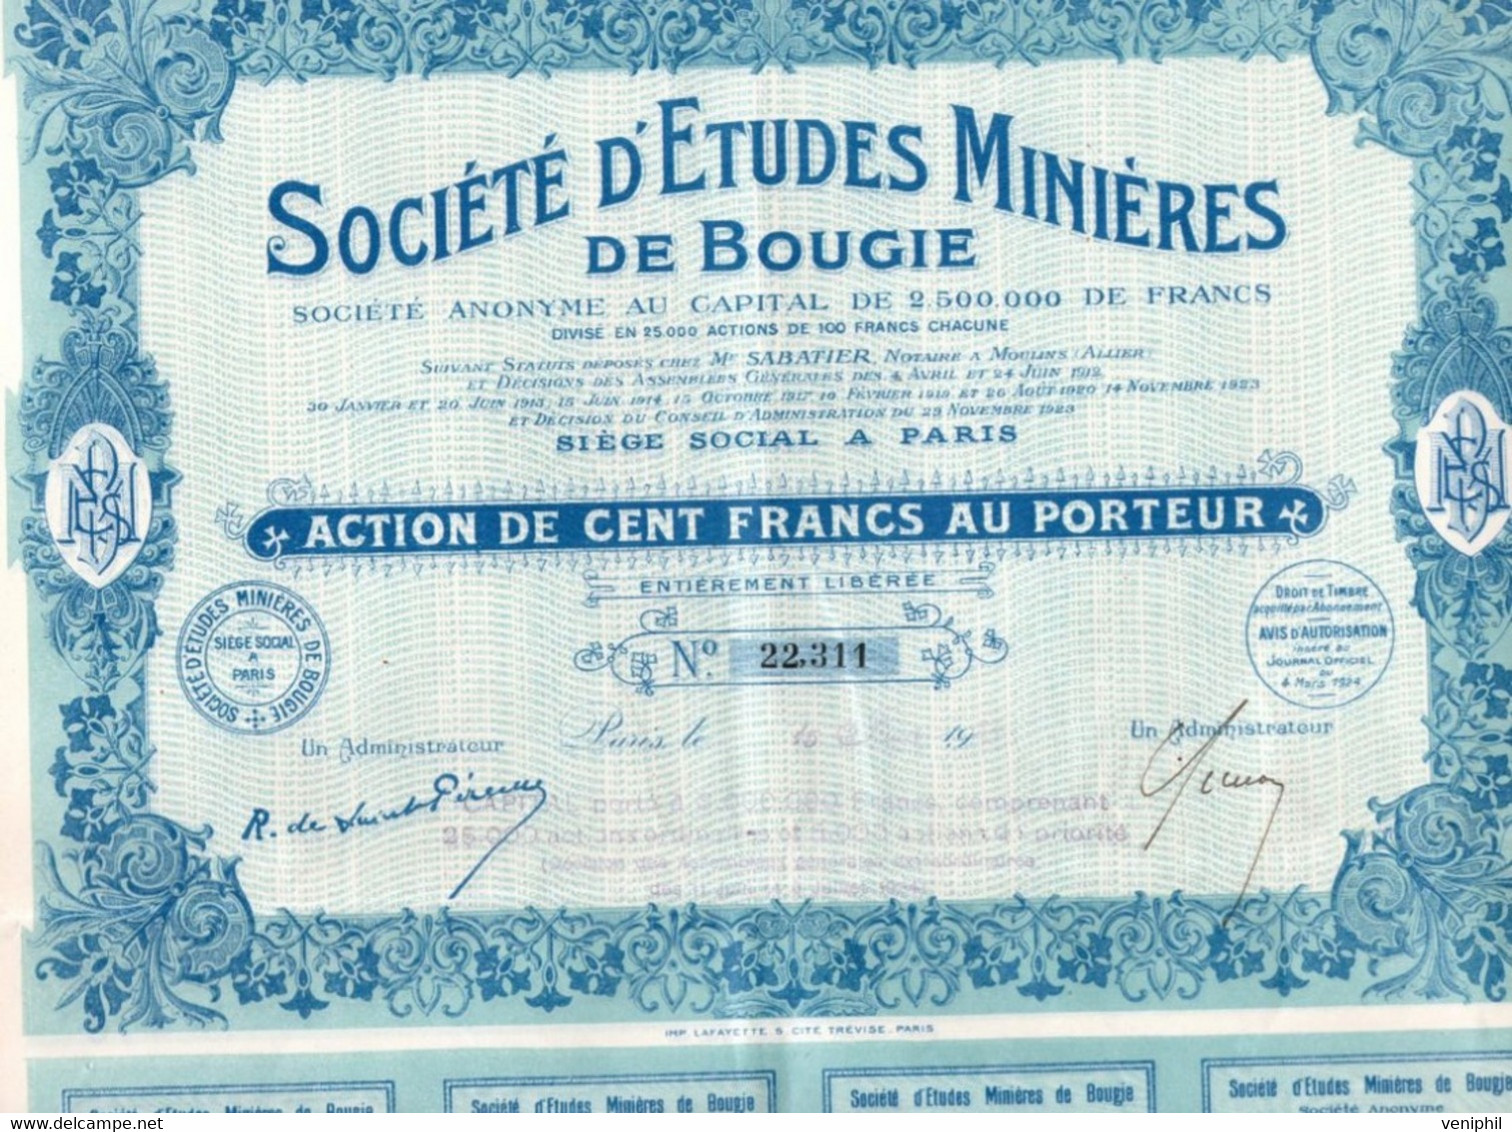 SOCIETE D'ETUDES MINIERES DE BOUGIE - ACTION DE CENT FRANCS -ANNEE 1924 - Mijnen